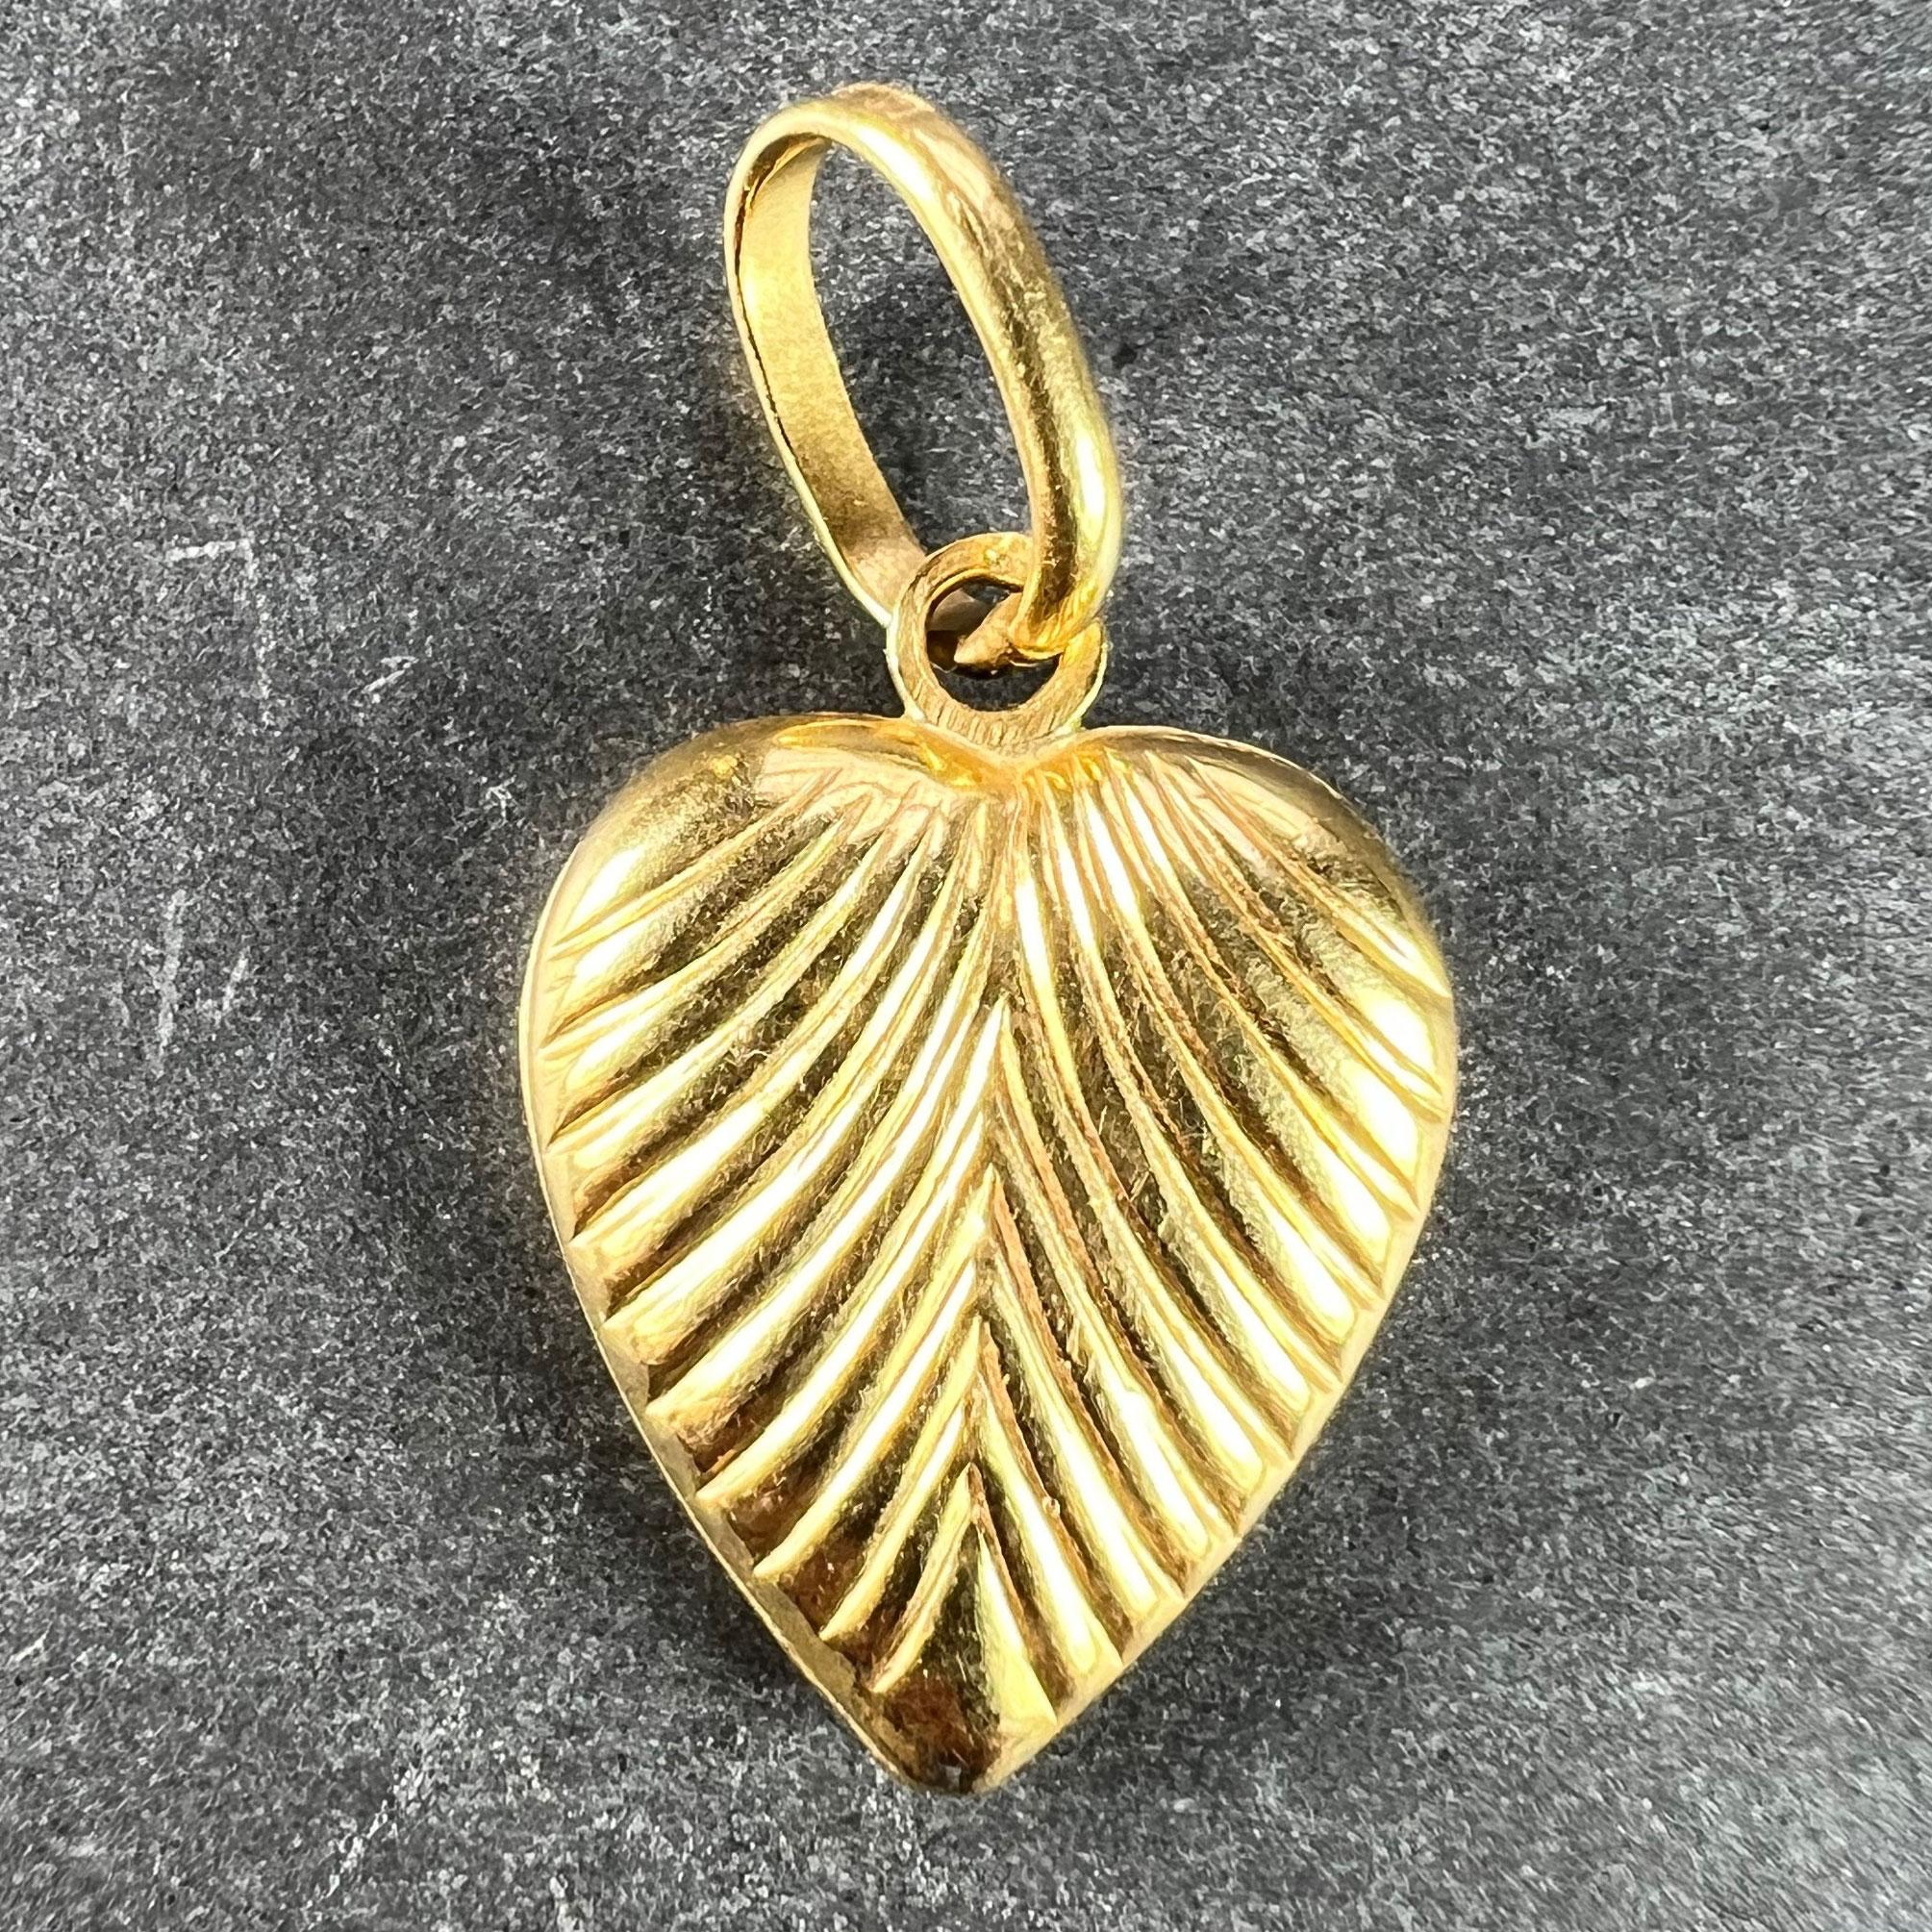 Pendentif à breloques italien en or jaune 18 carats (18K) conçu comme un cœur bouffant avec des crêtes festonnées. Estampillé 750 pour l'or 18 carats et 569VI pour la fabrication italienne.

Dimensions : 1,5 x 1,1 x 0,33 cm (sans l'anneau de saut) :